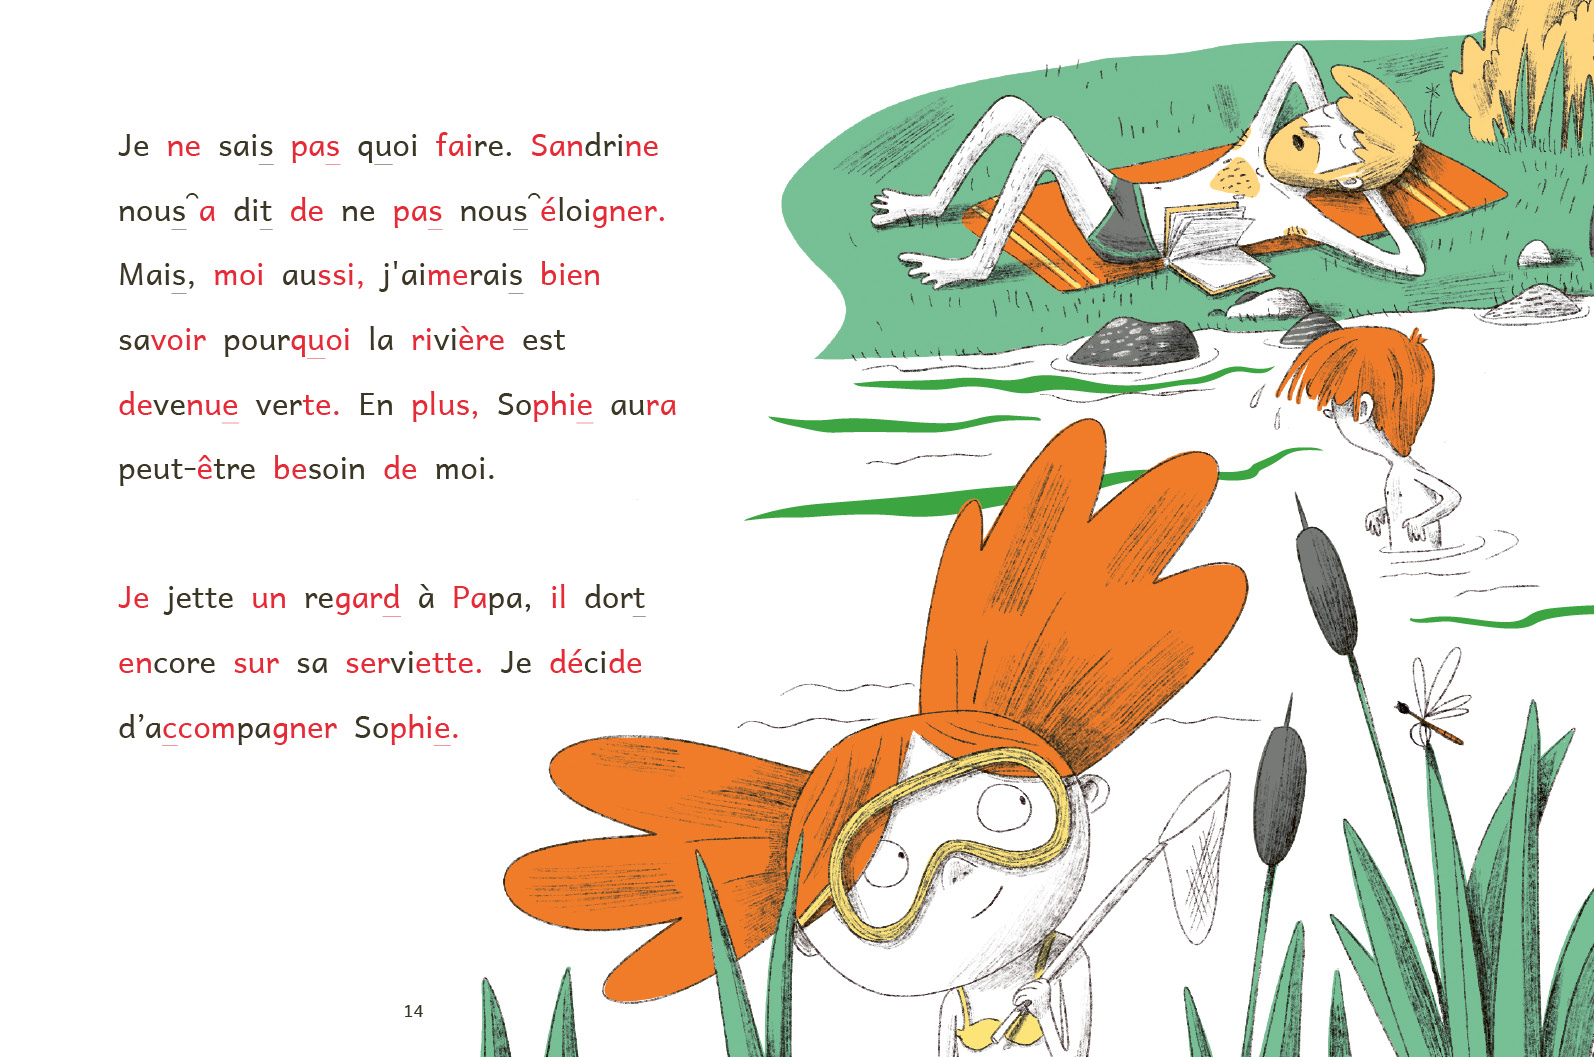 Les Enquetes De Quentin Et Sophie T9 (Le Mystere De La Riviere Vert Fluo)